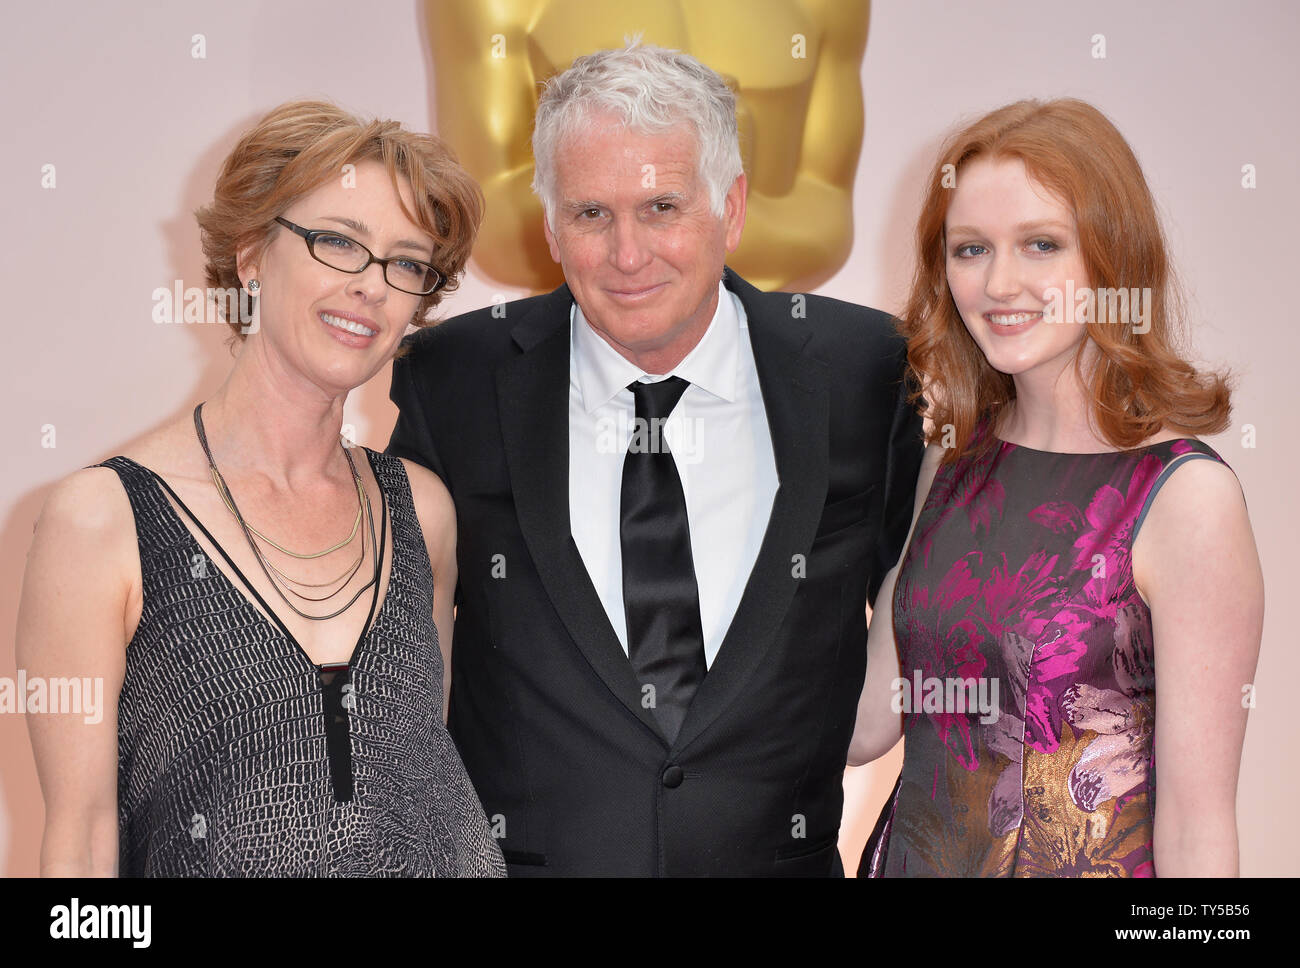 Robert Yeaman, 'Il Grand Hotel di Budapest' cinematografia, arriva al 87th Academy Awards a Hollywood & Highland Center di Los Angeles il 22 febbraio 2015. Foto di Kevin Dietsch/UPI Foto Stock